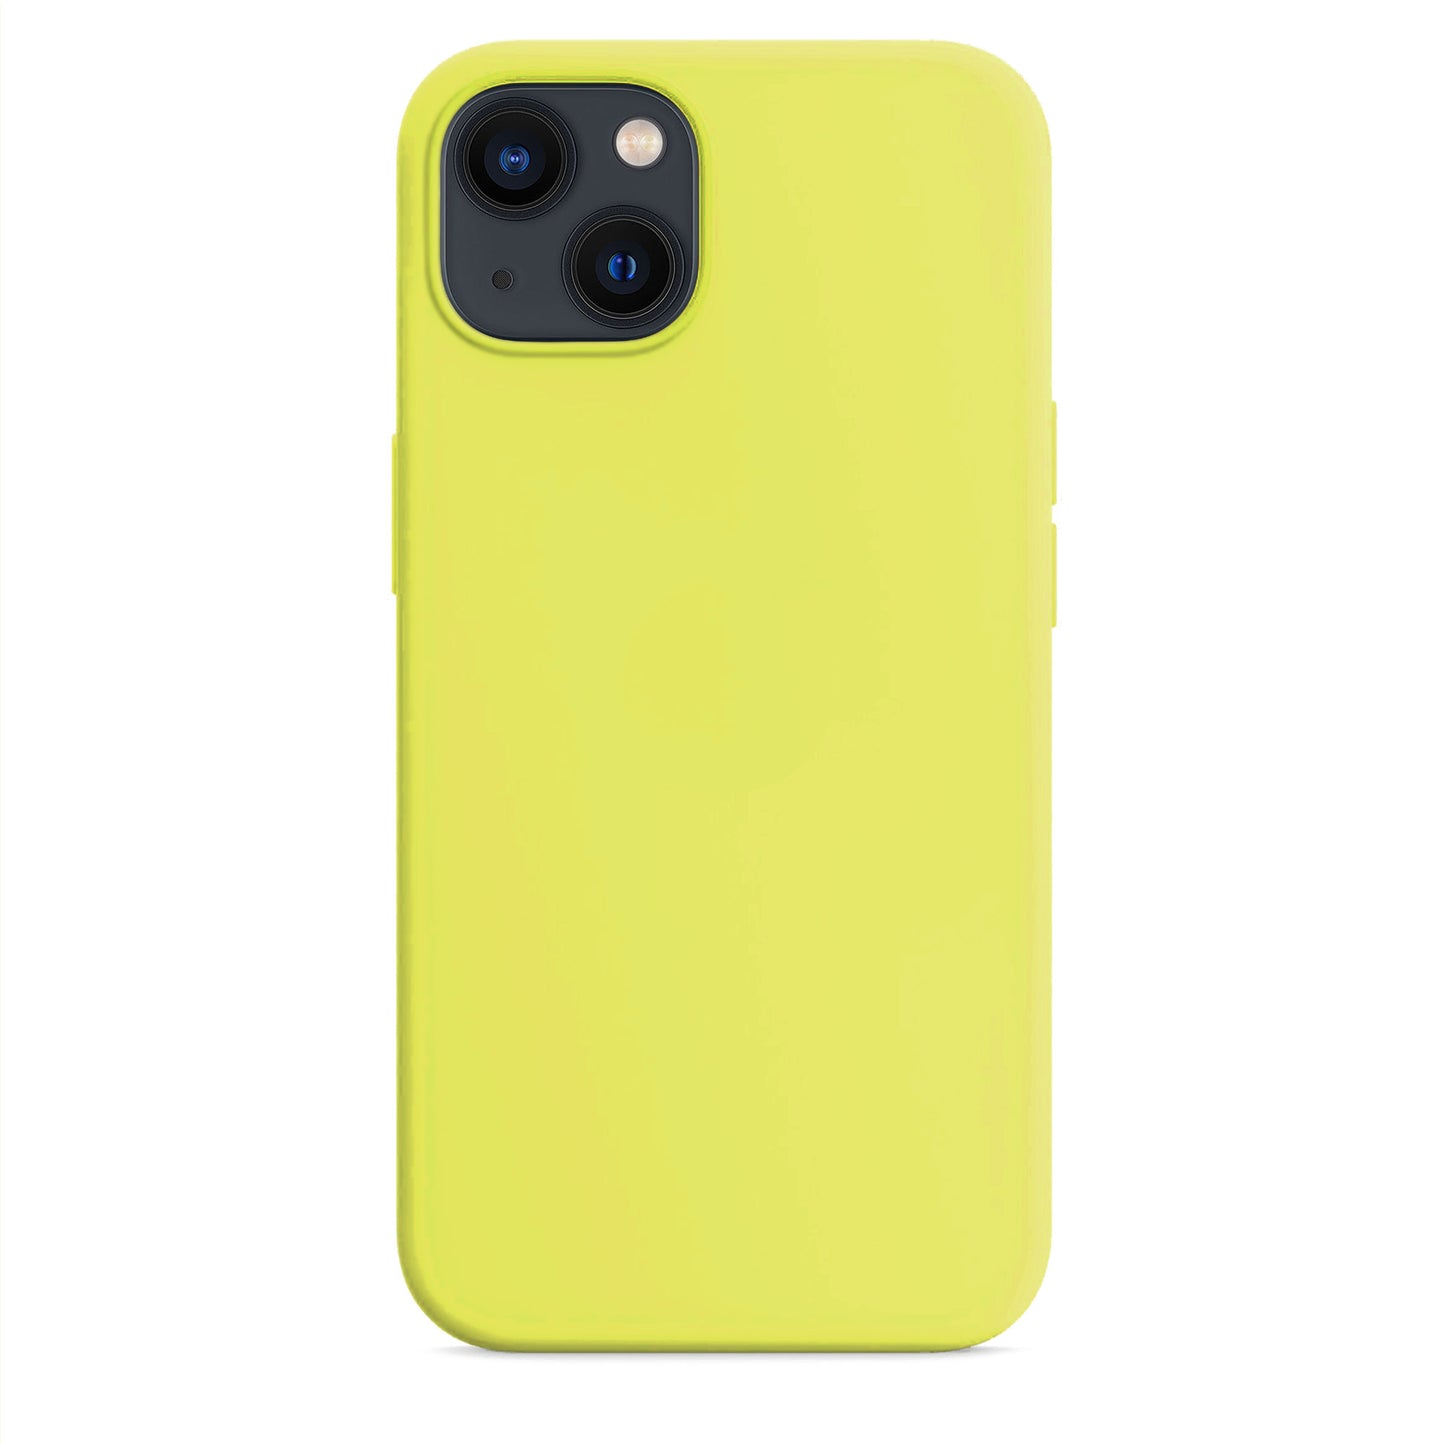 Lemon Zest Silikon Hülle für iPhone